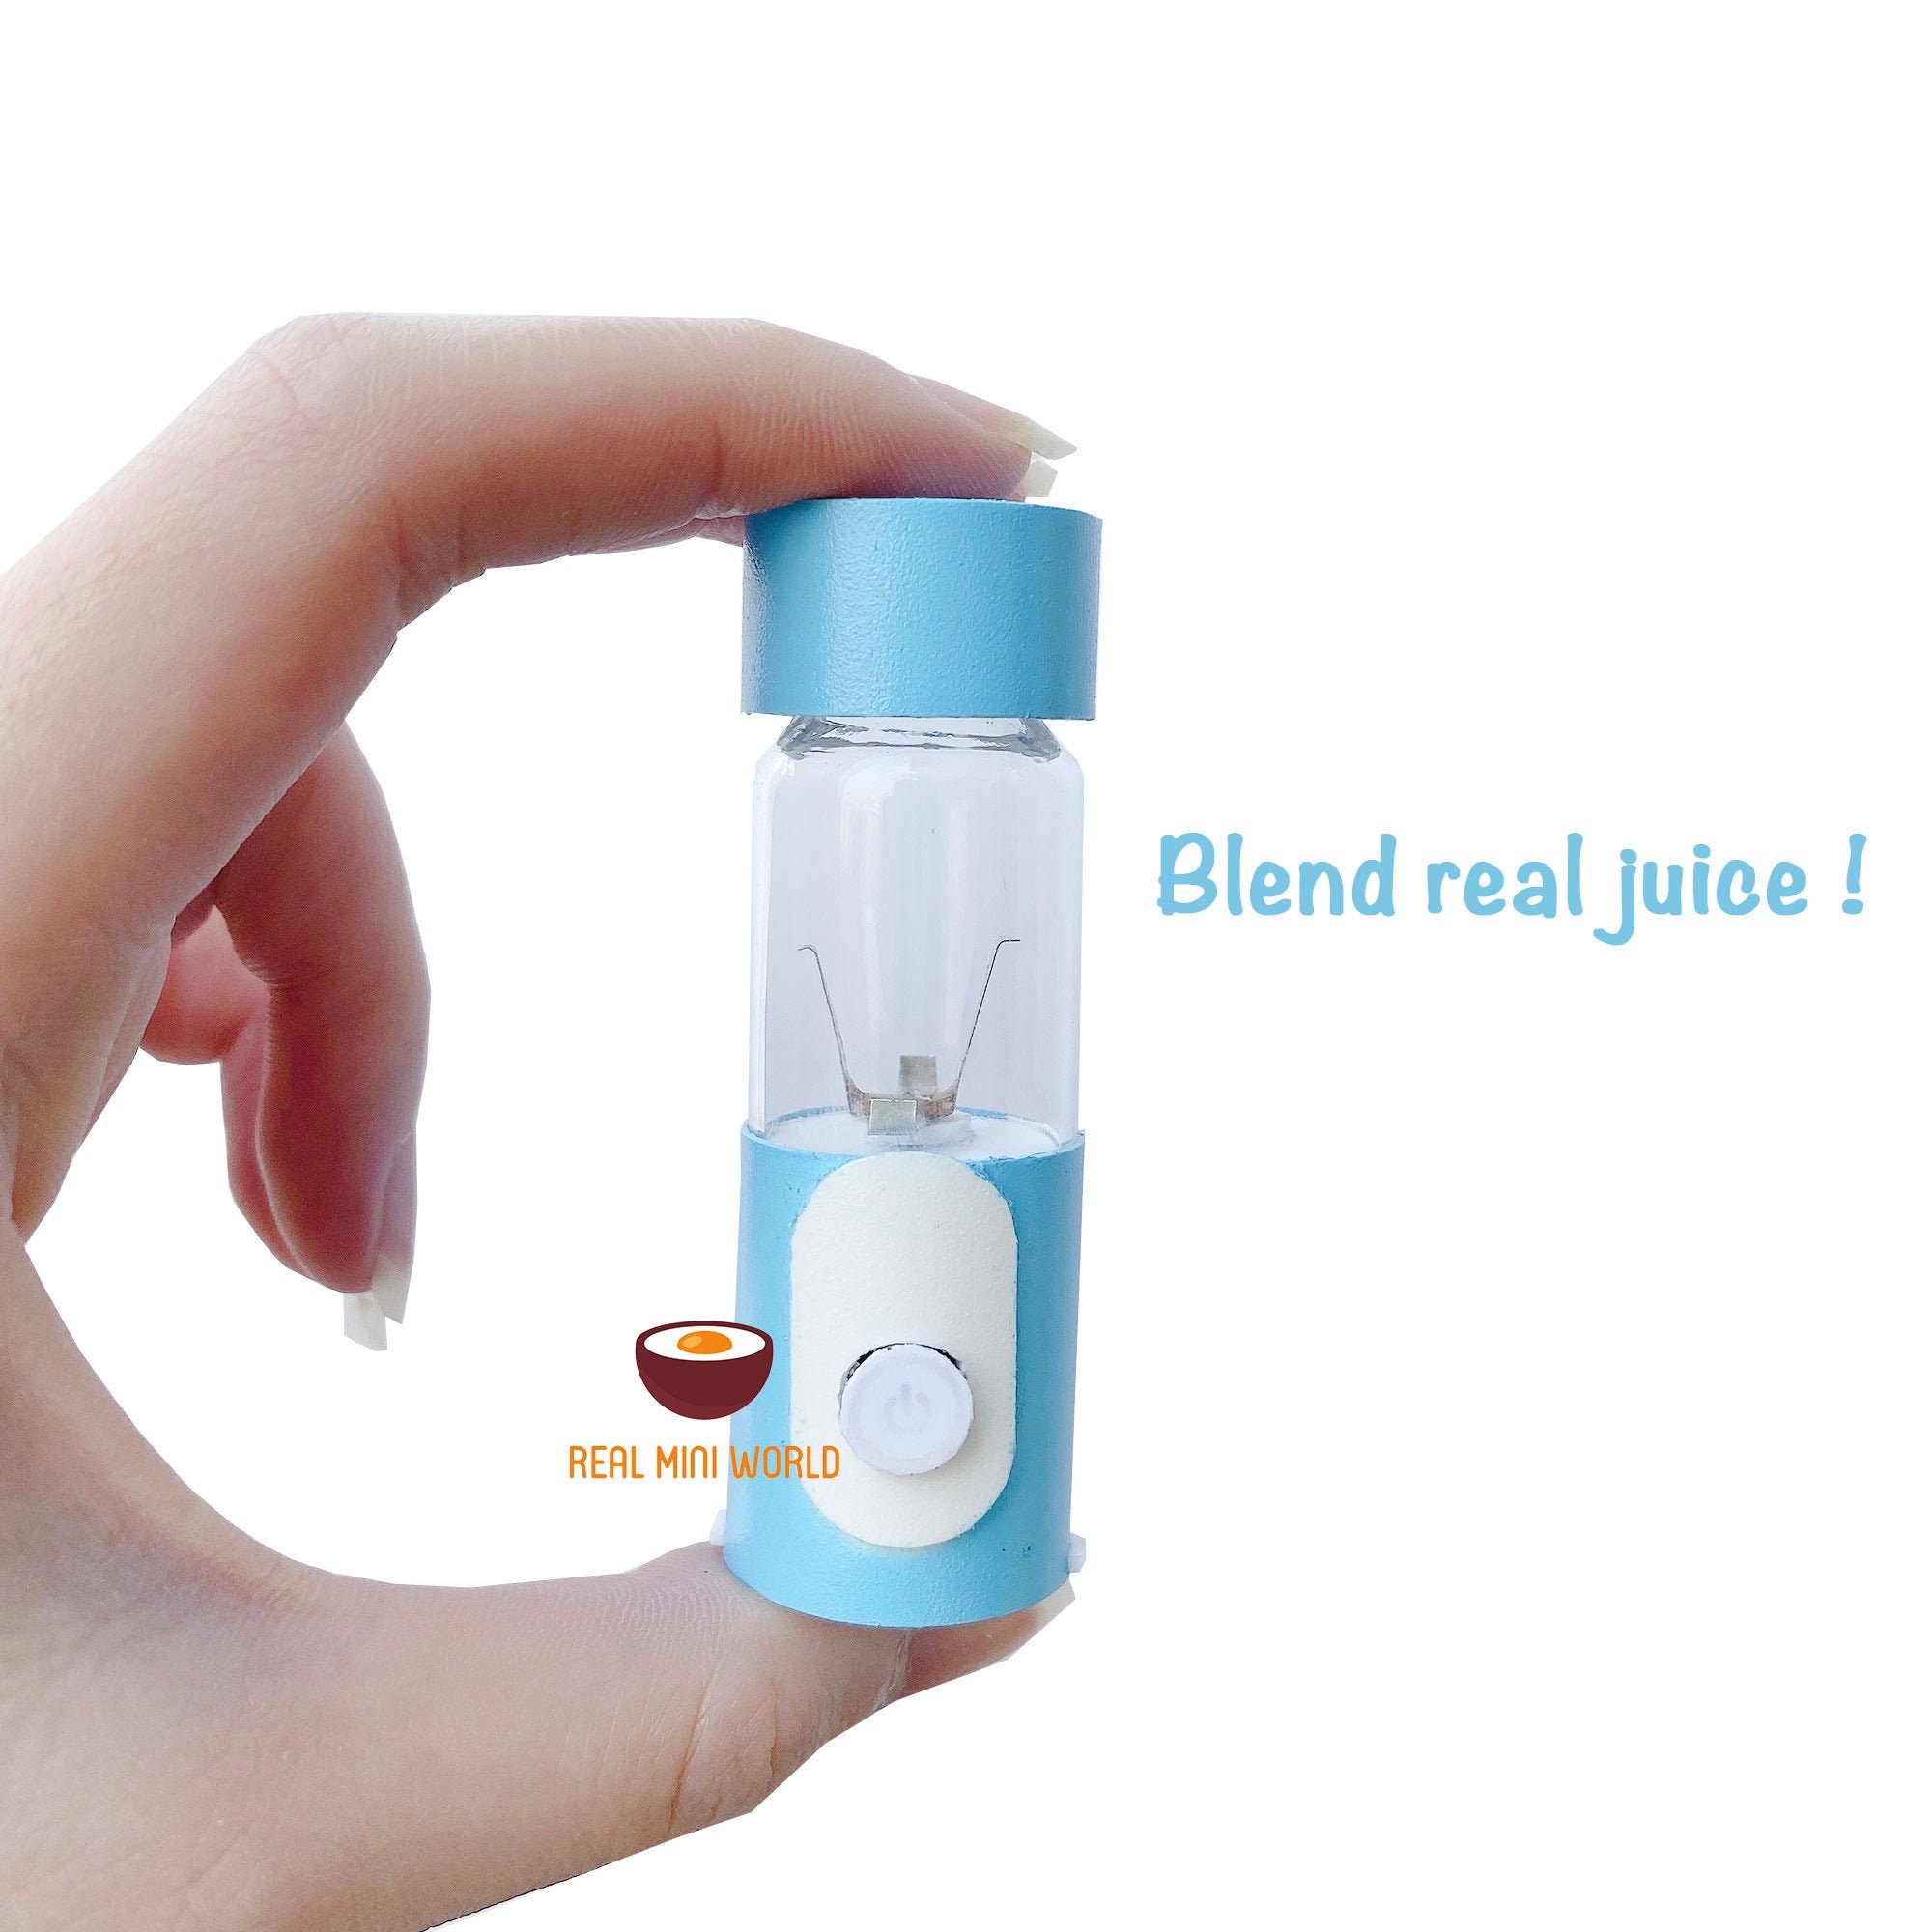 Real Working Miniature Juicer Blender Pastel Blue | Can Blend Real Fruit & Vegetables